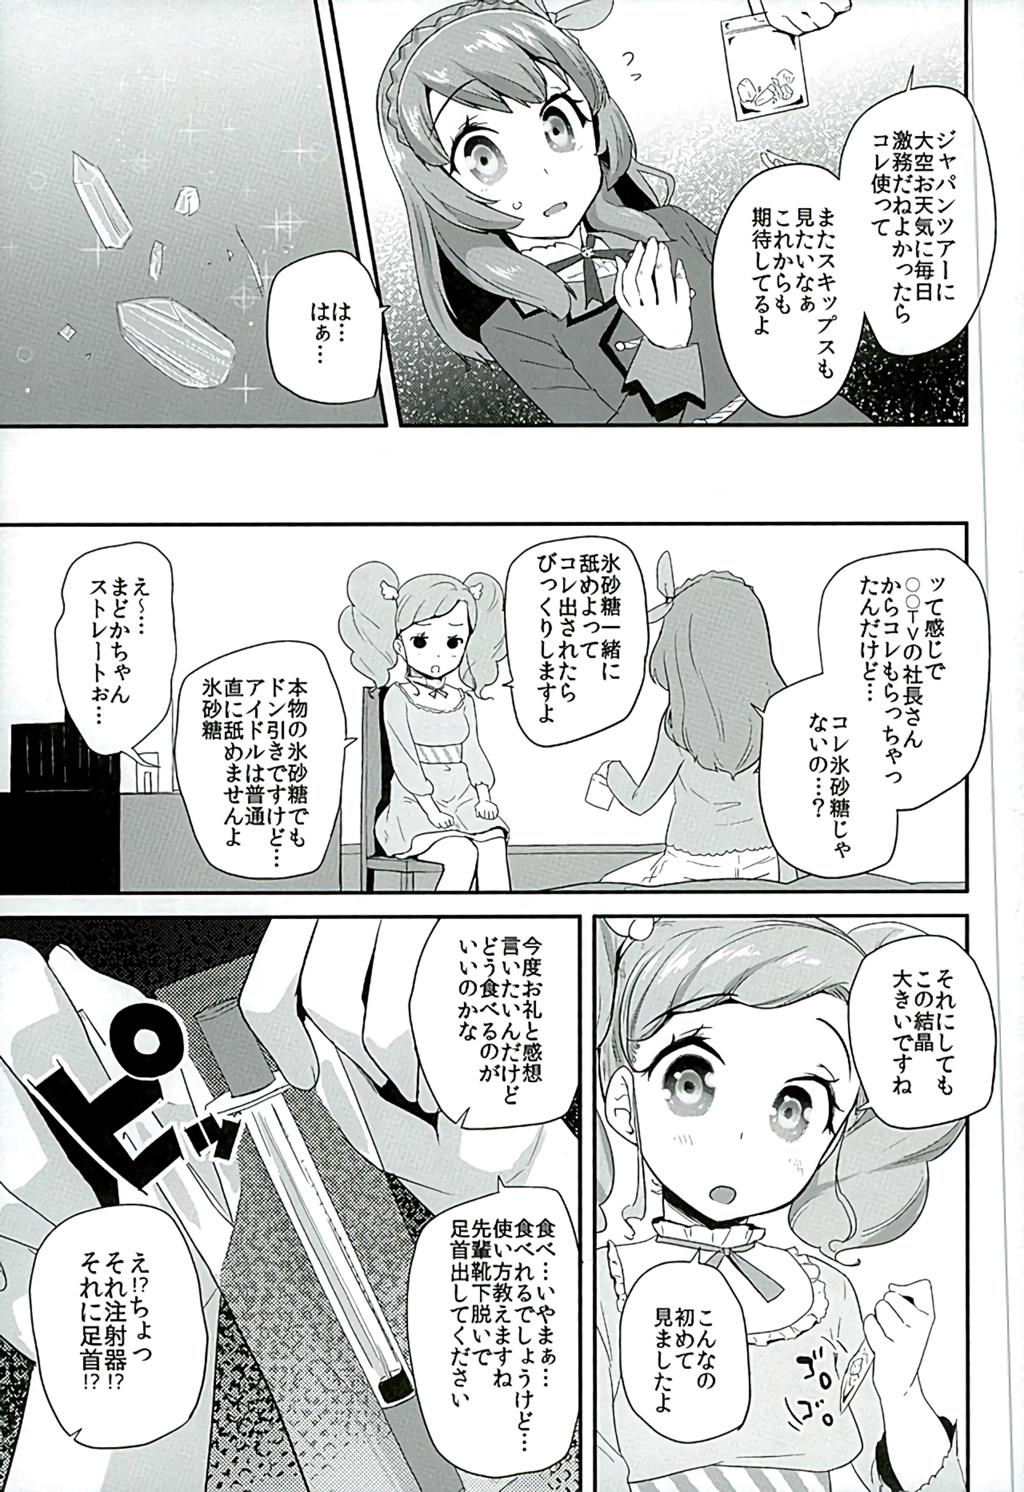 Gape Tri Tri Trips! - Aikatsu Kitchen - Page 4